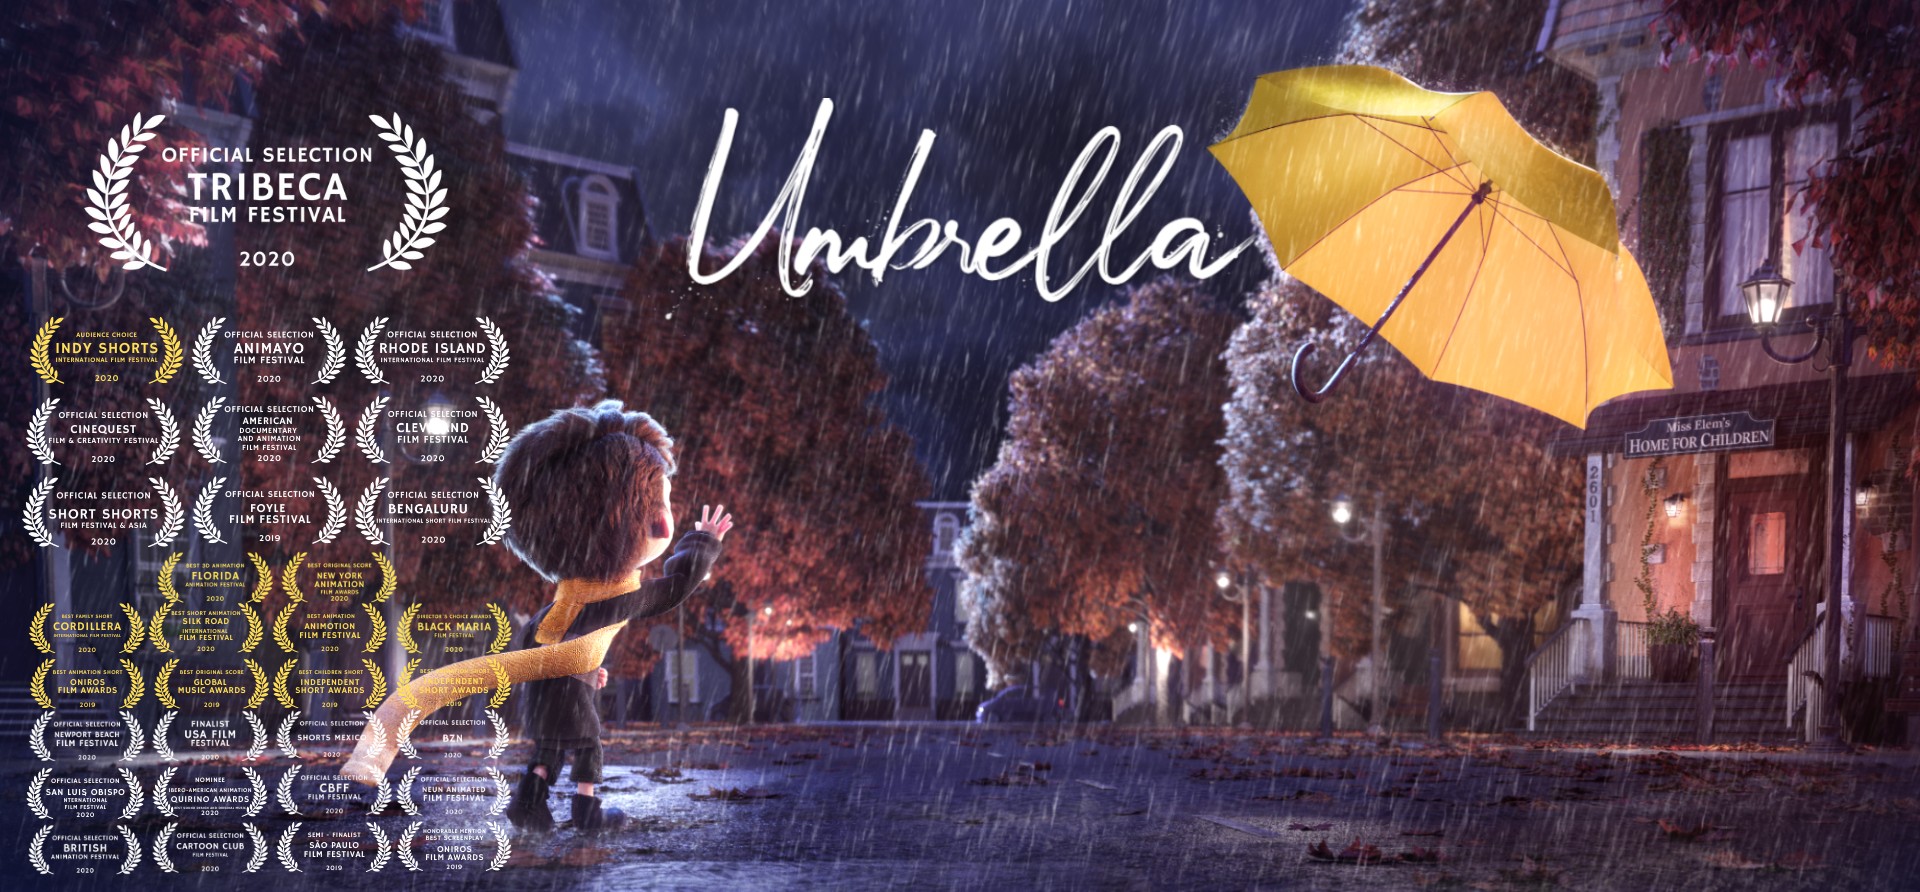 Alguns dos festivais internacionais para que Umbrella foi selecionado (Foto: Divulgação)